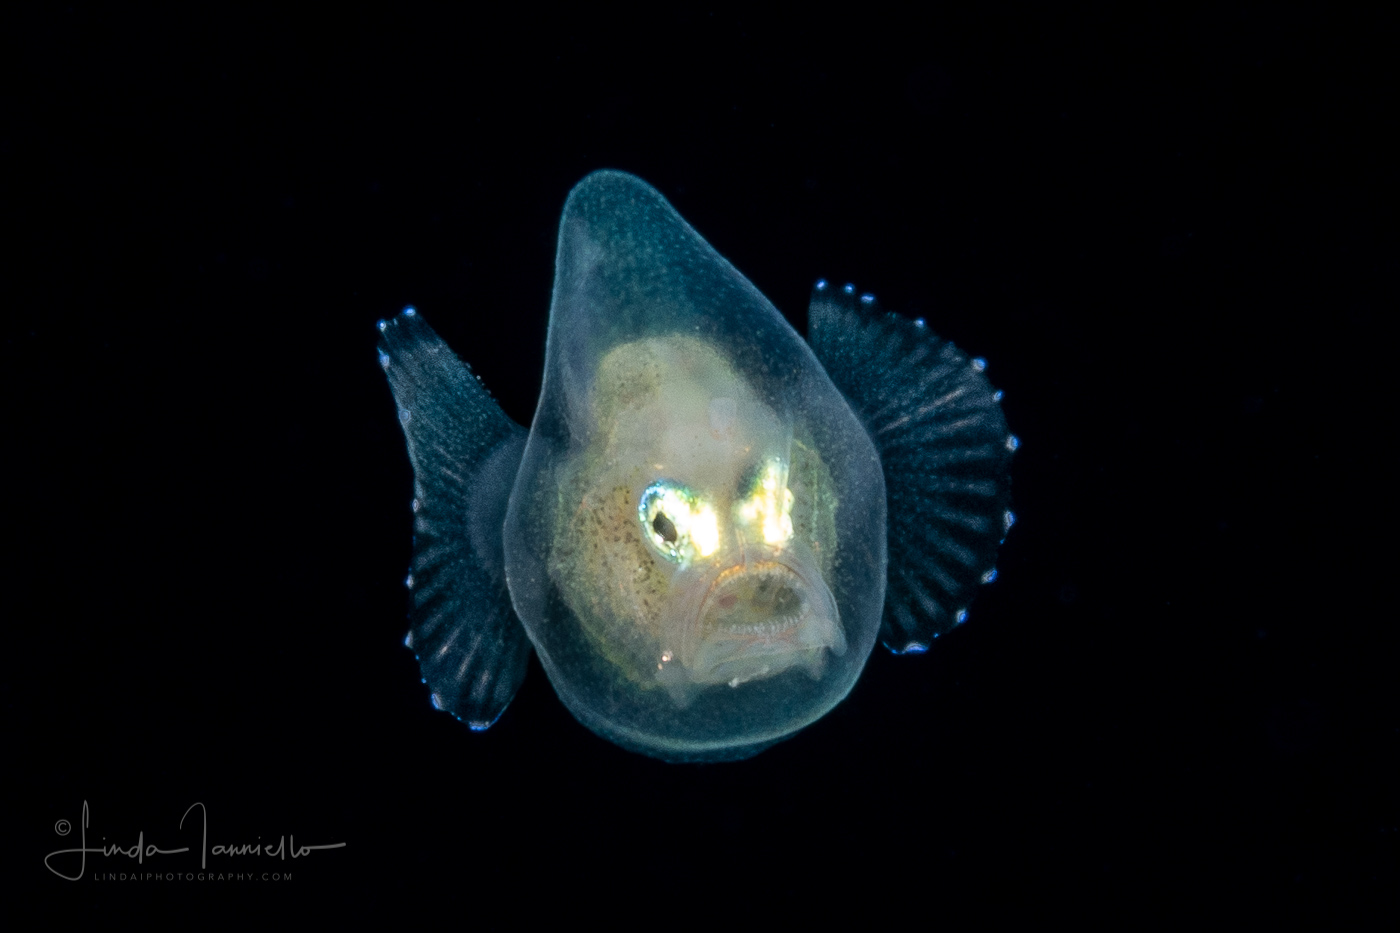 Anglerfish - Cosmopolitan hipnose - Gigantactinidae - Gigantactis cf. vanhoeffeni - Female